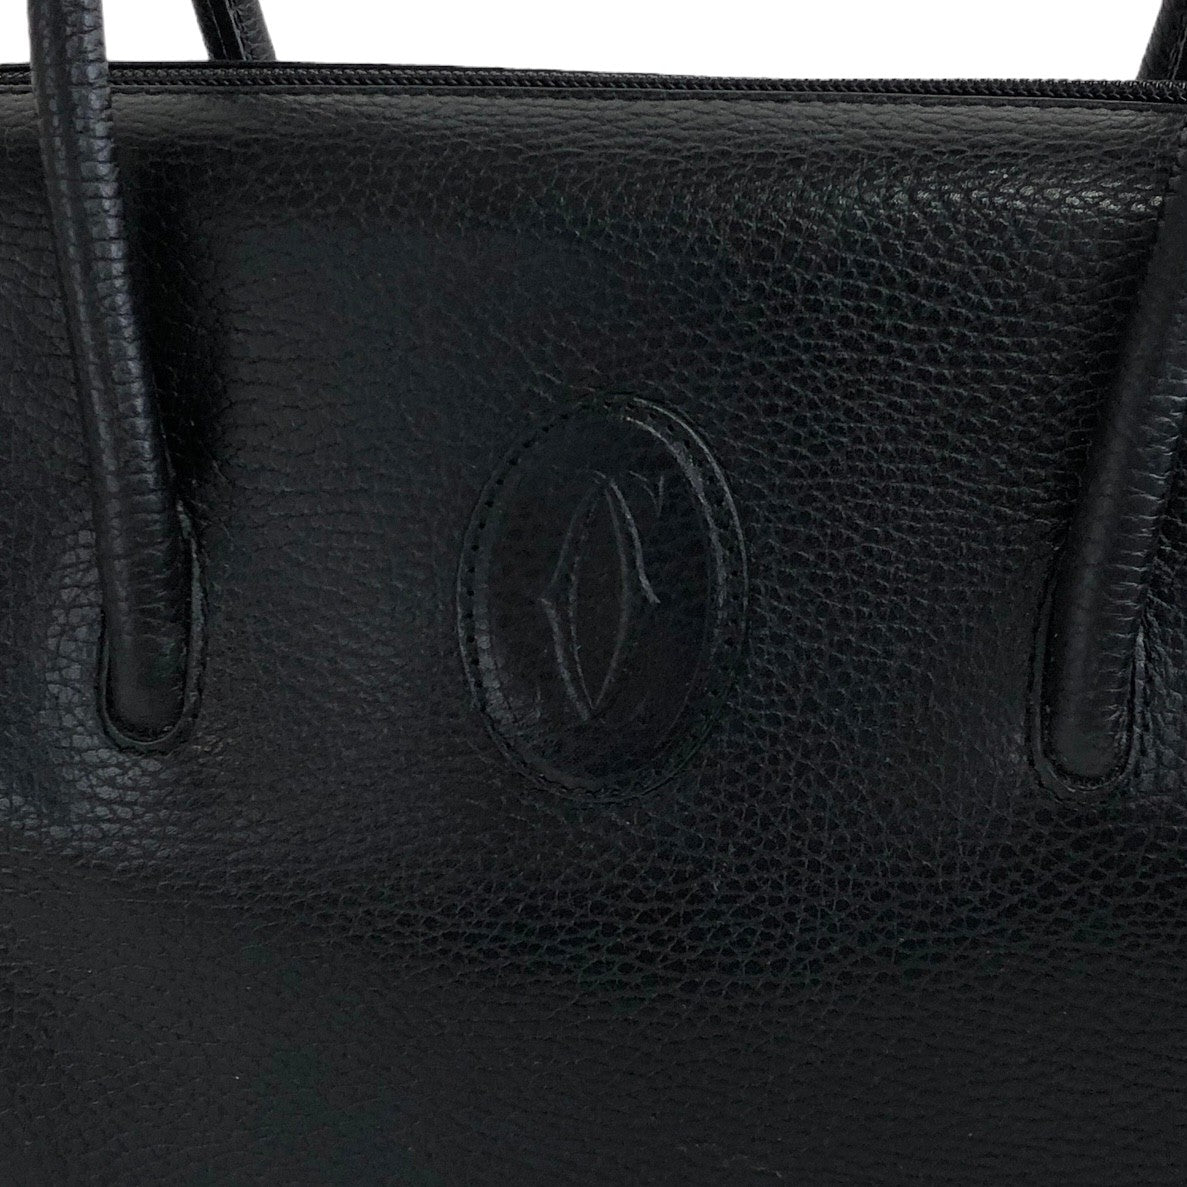 Cartier Leather Handbag Boston bag Black Vintage aki576